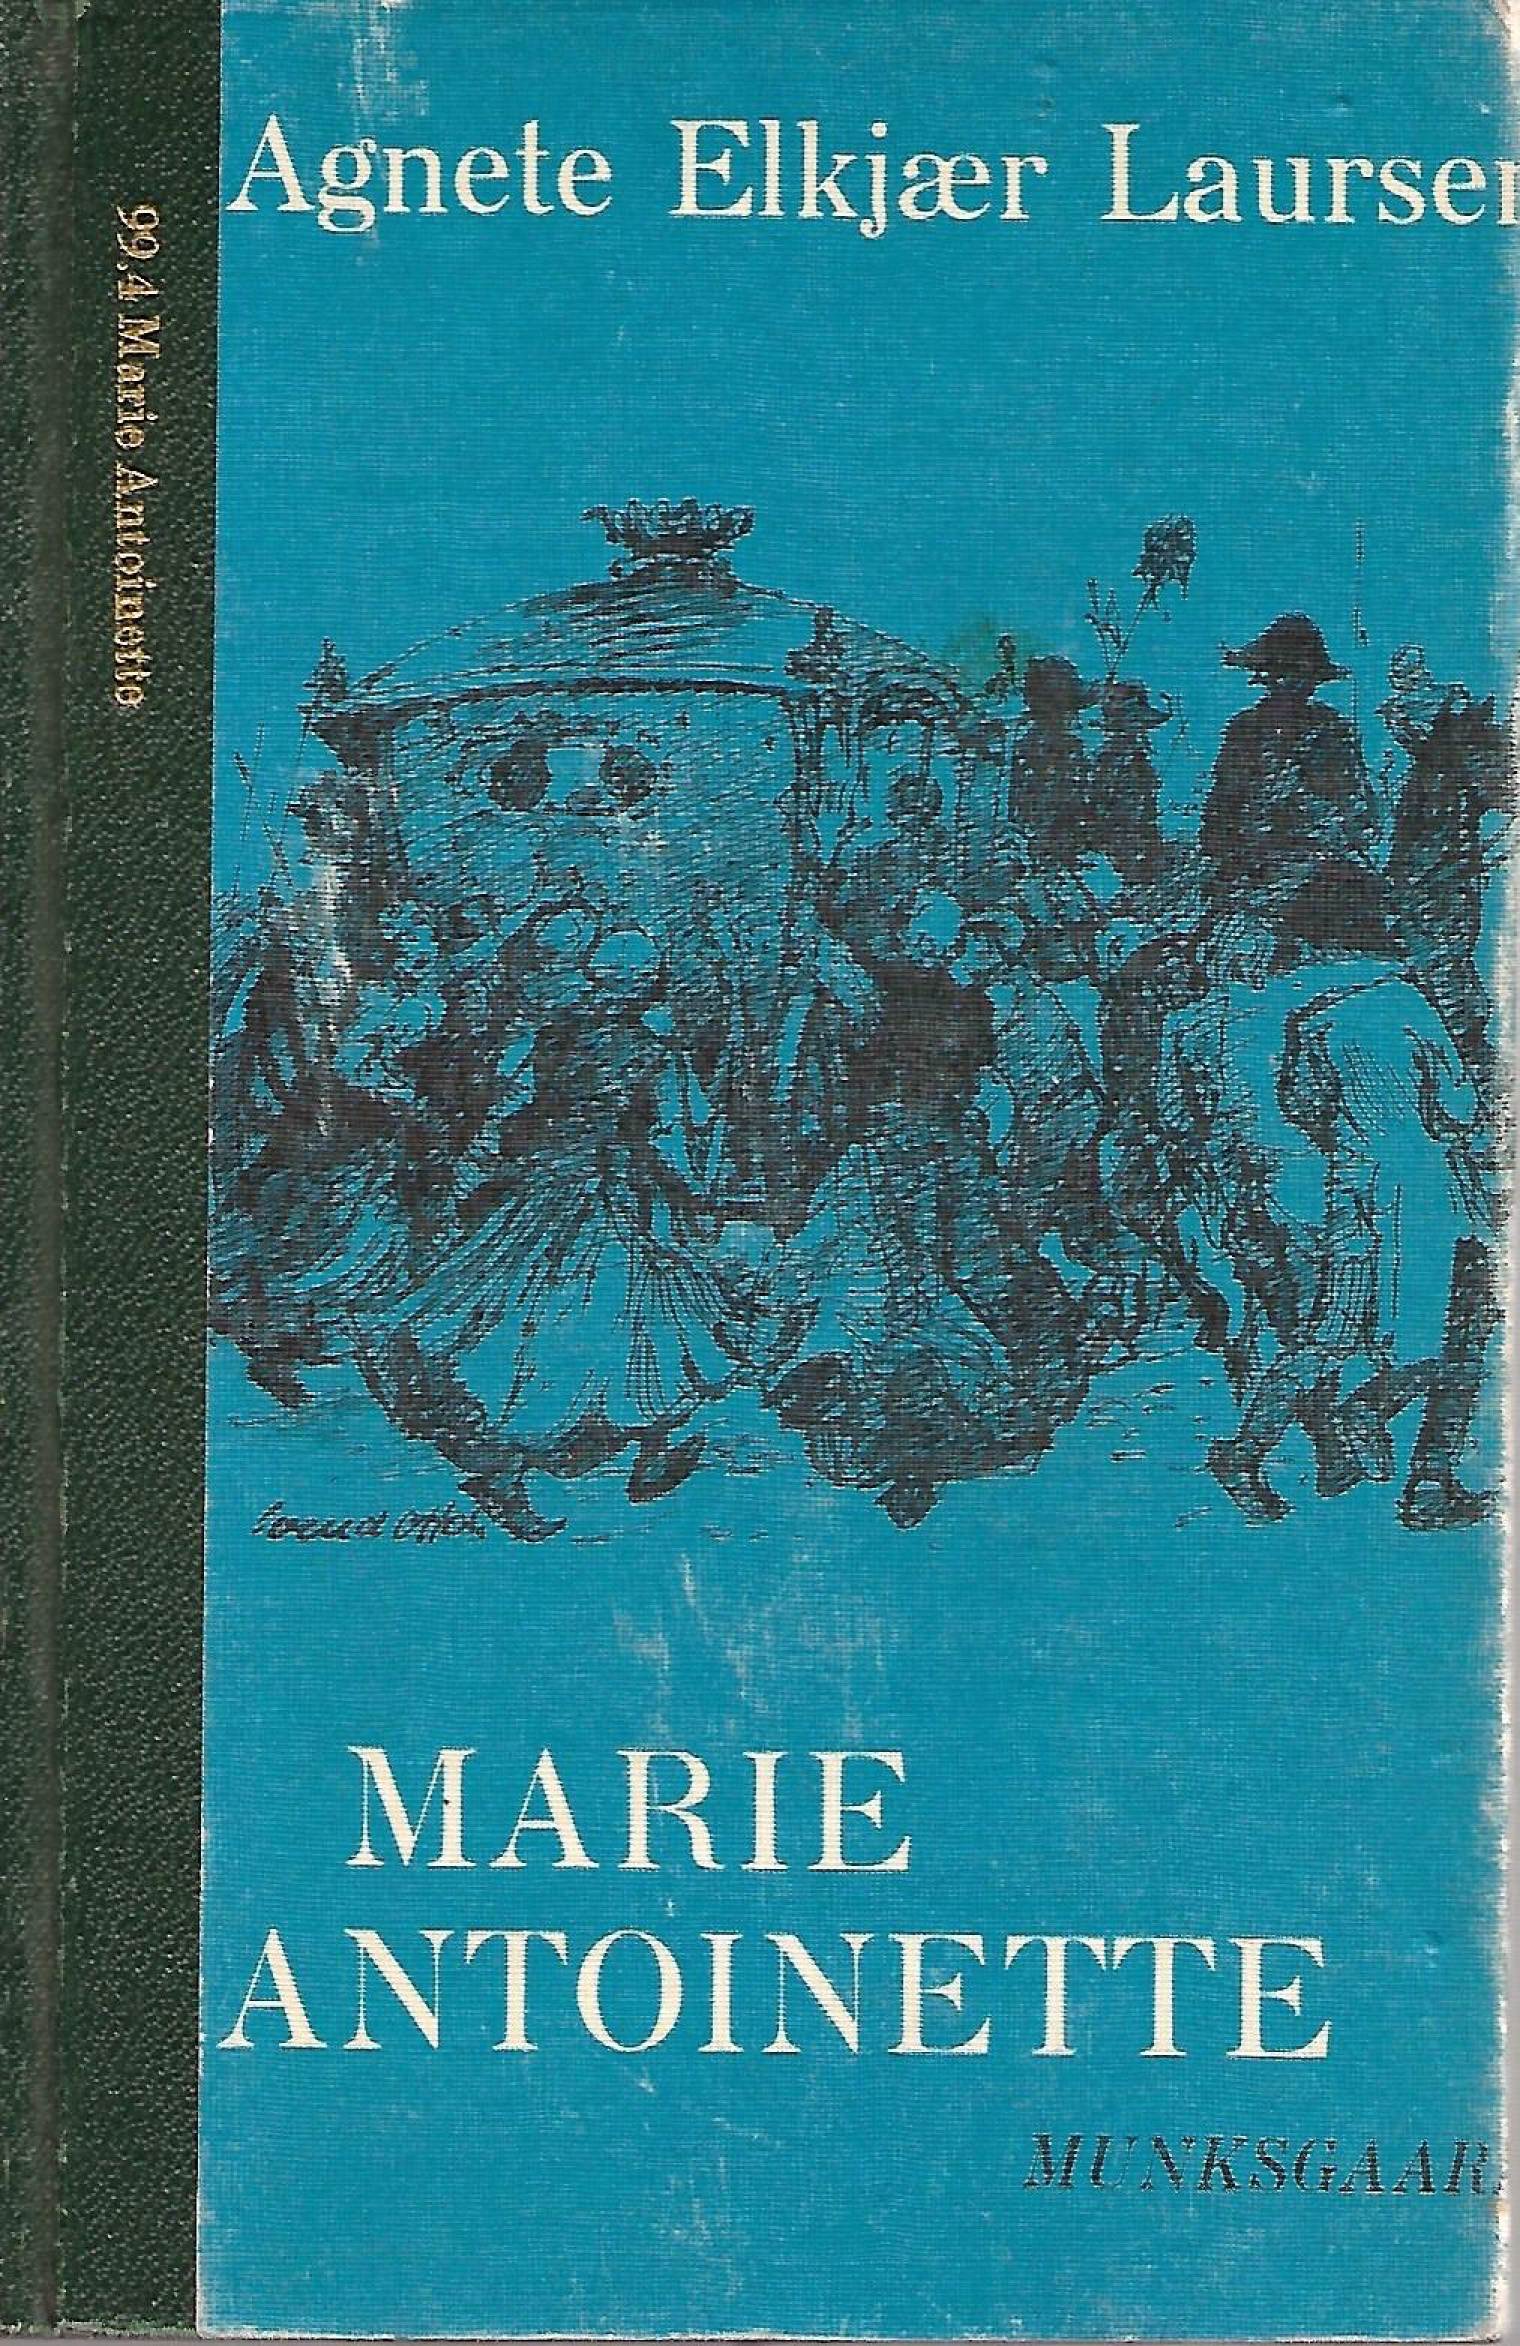 Marie Antoinette - Agnete Elkjær Laursen-1